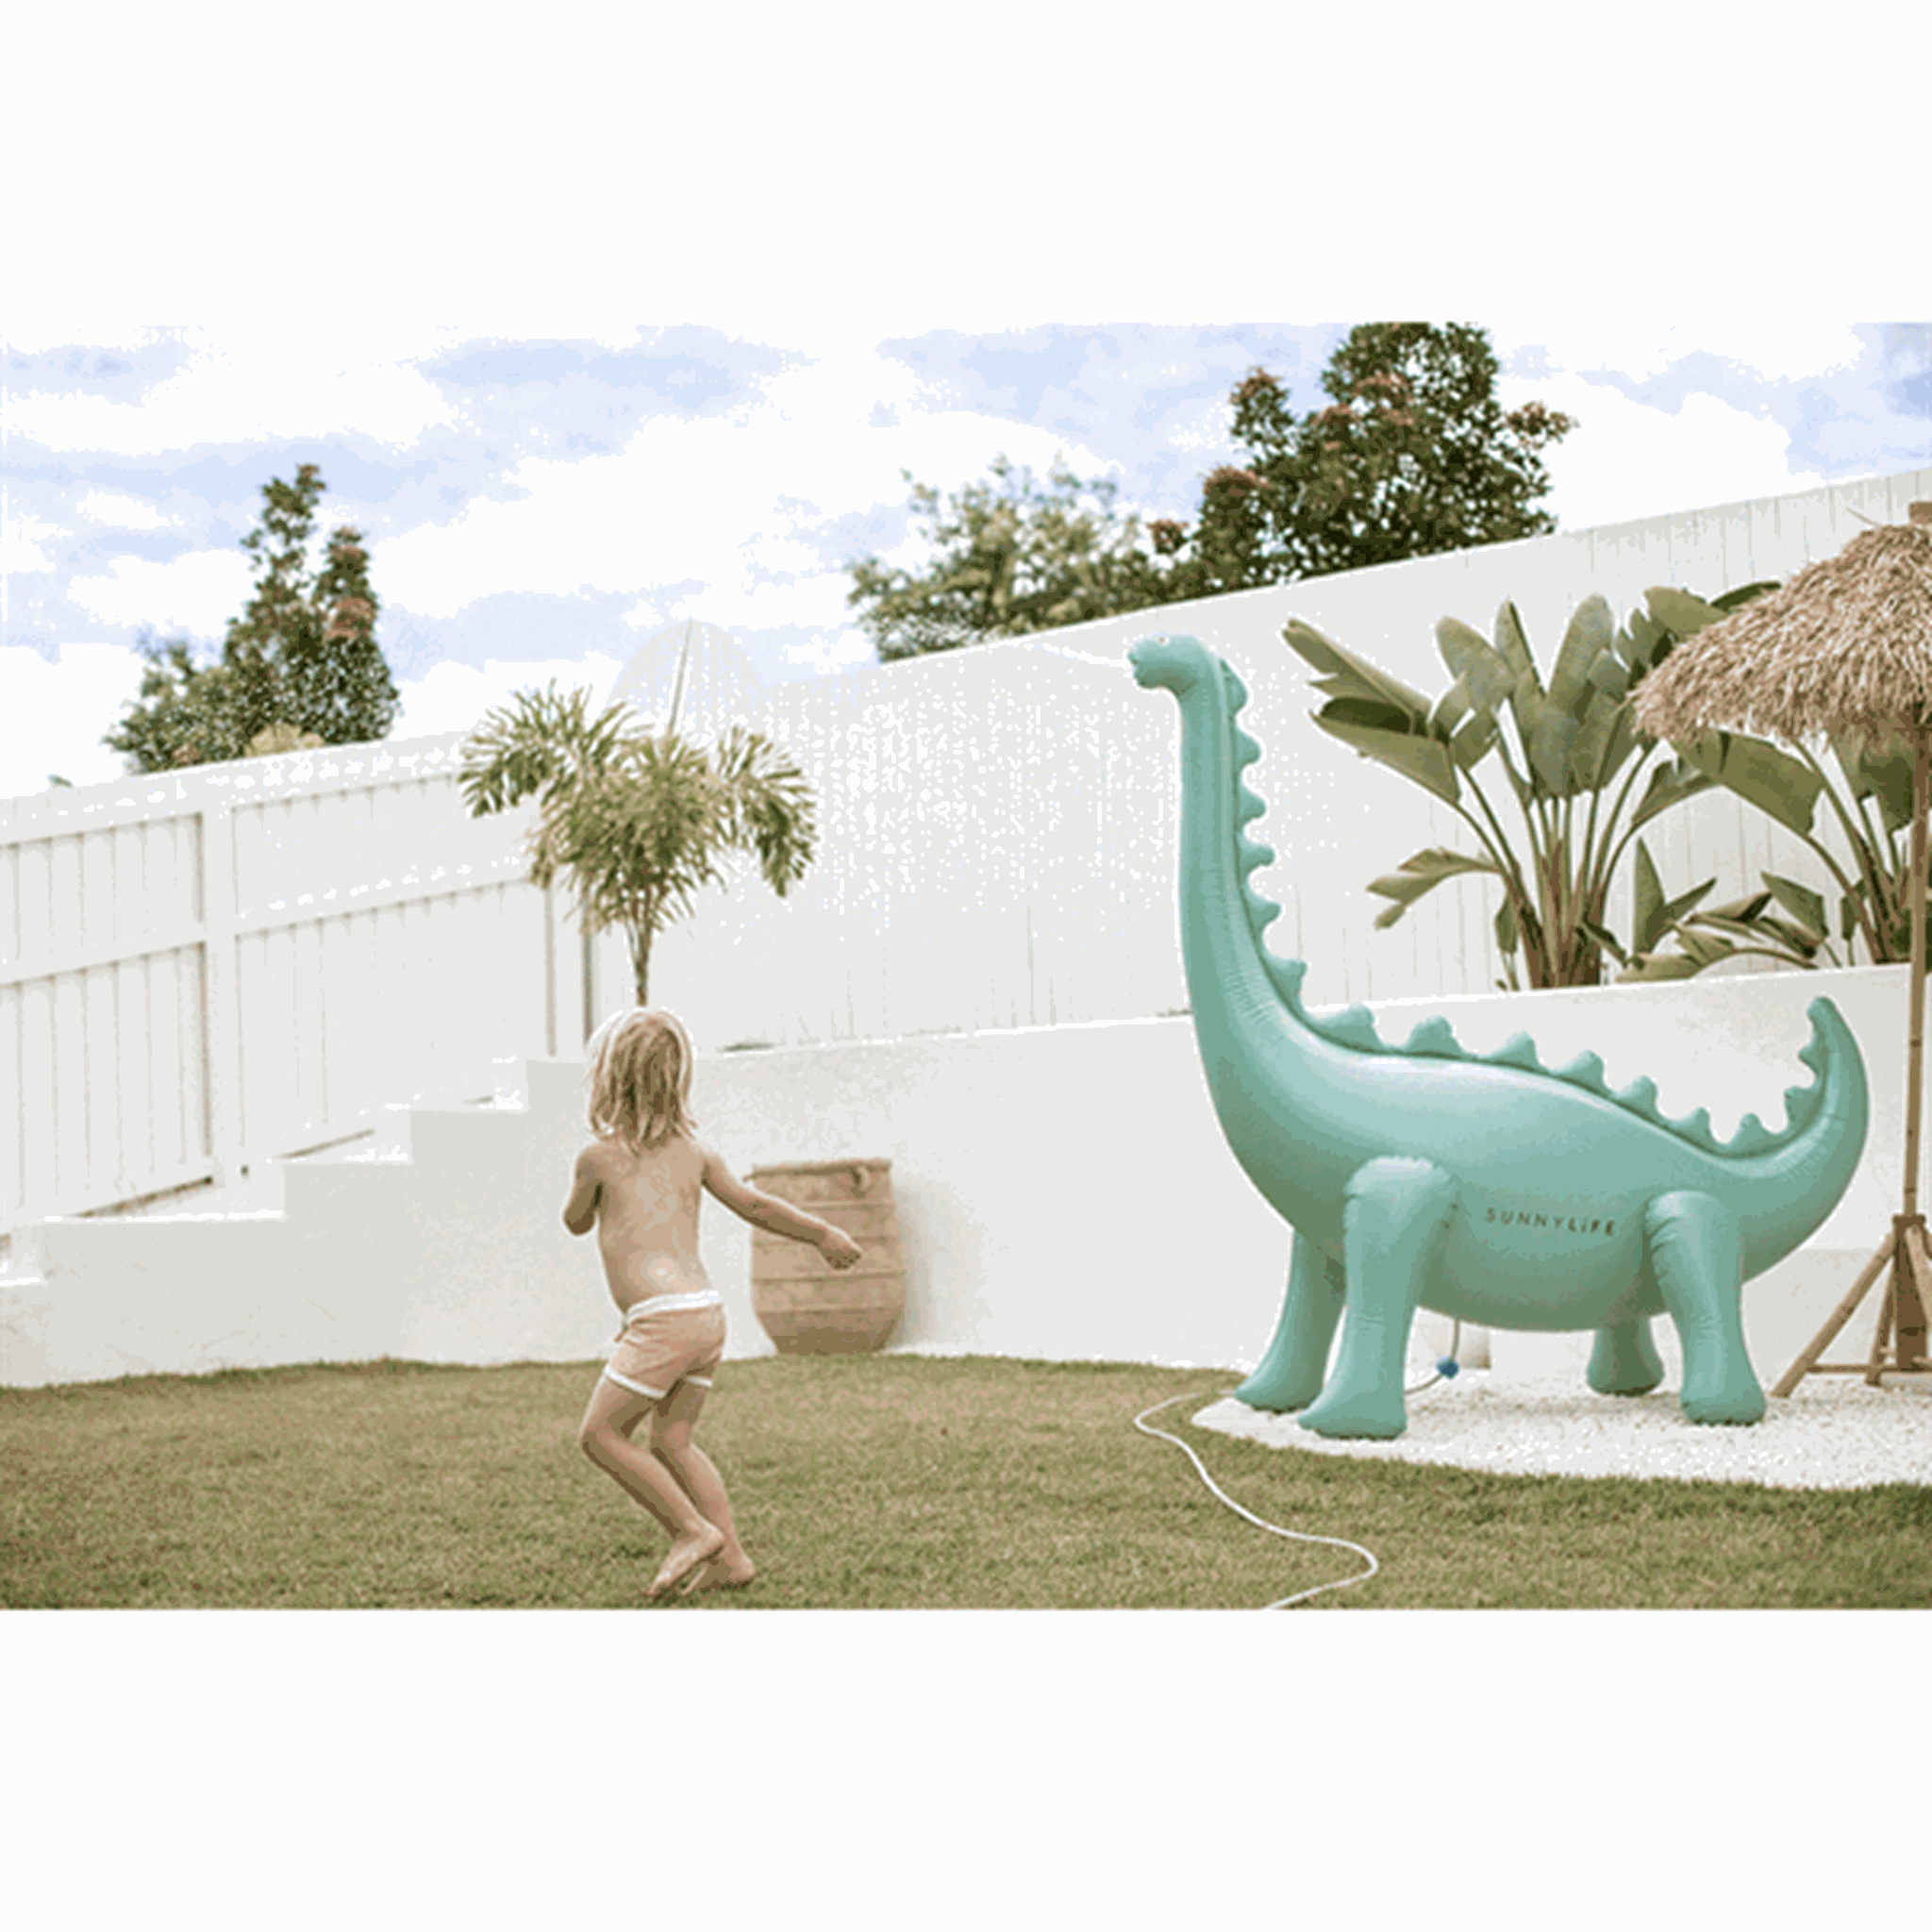 SunnyLife Inflatable Giant Sprinkler Dinosaur 4